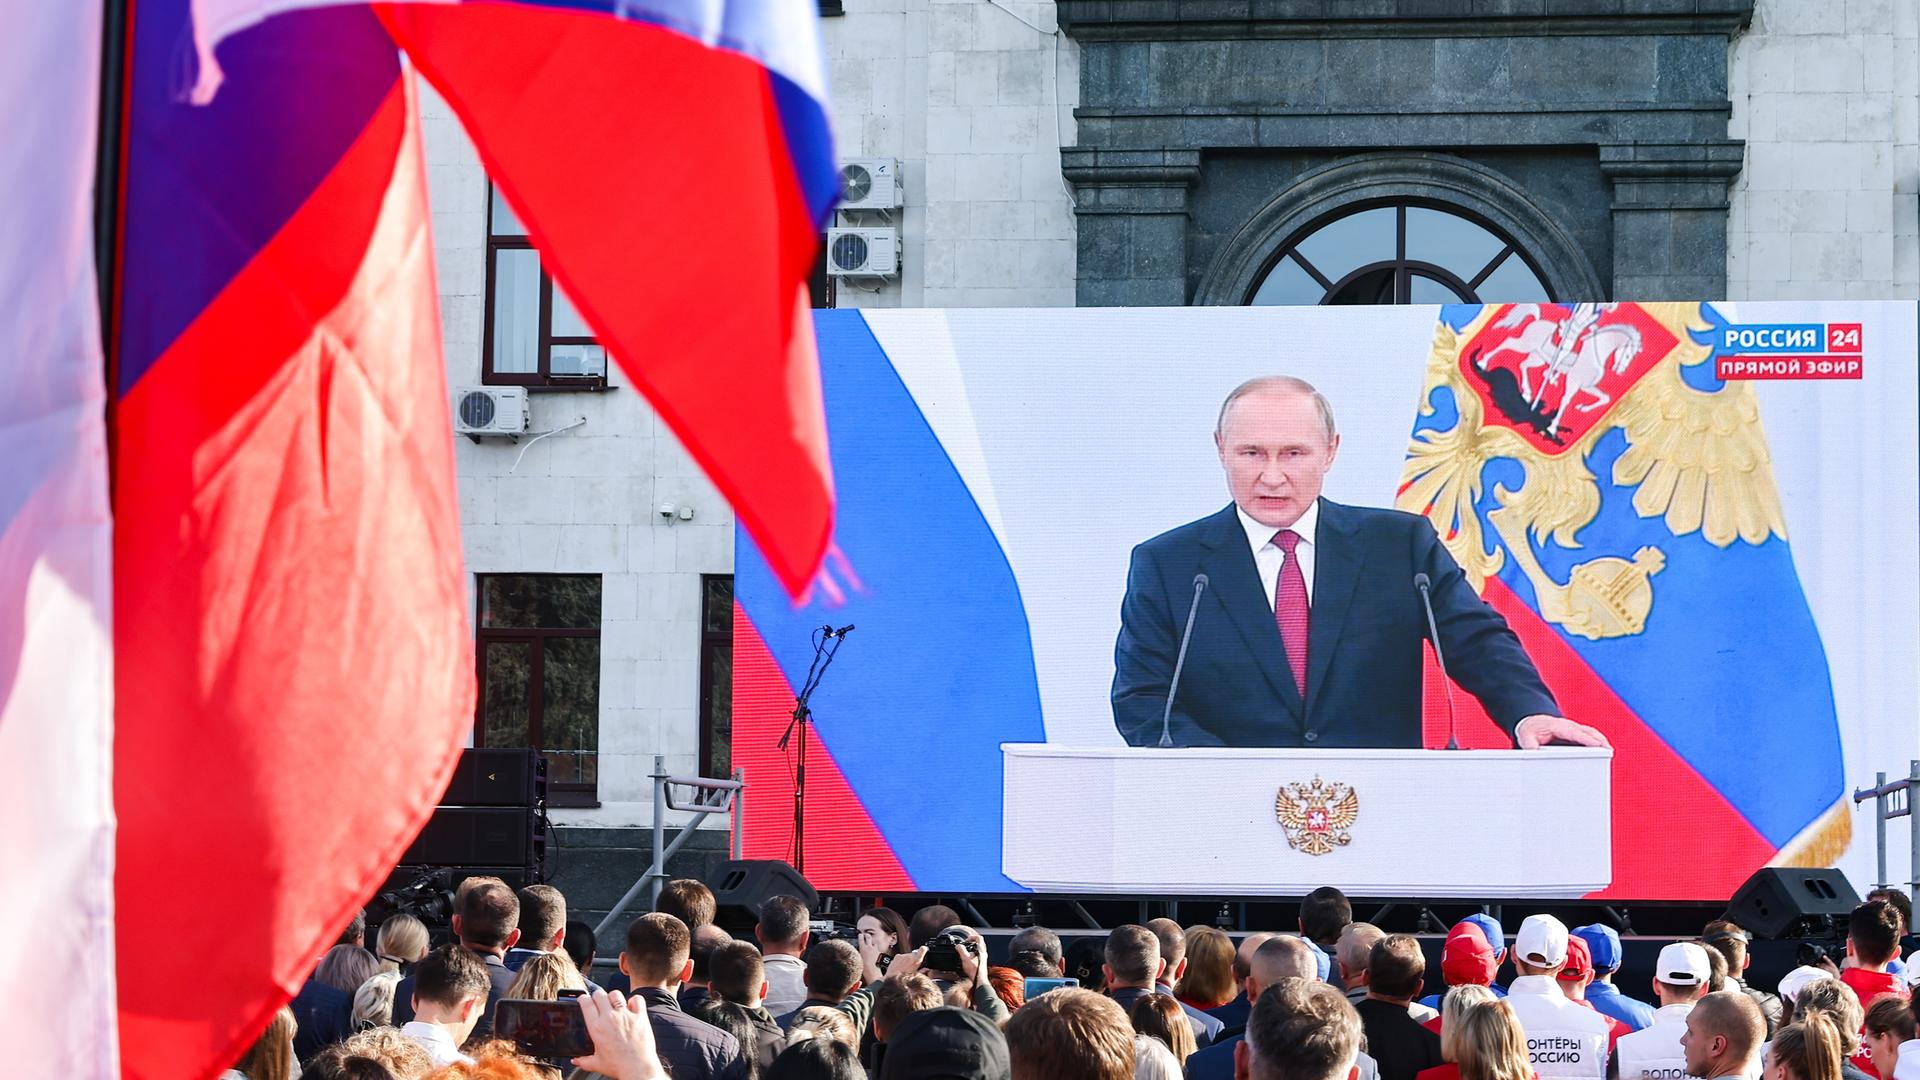 Auf einer großen Leinwand wird die Rede des russischen Präsidenten Wladimir Putin übertragen. Seine Anhänger stehen davor.